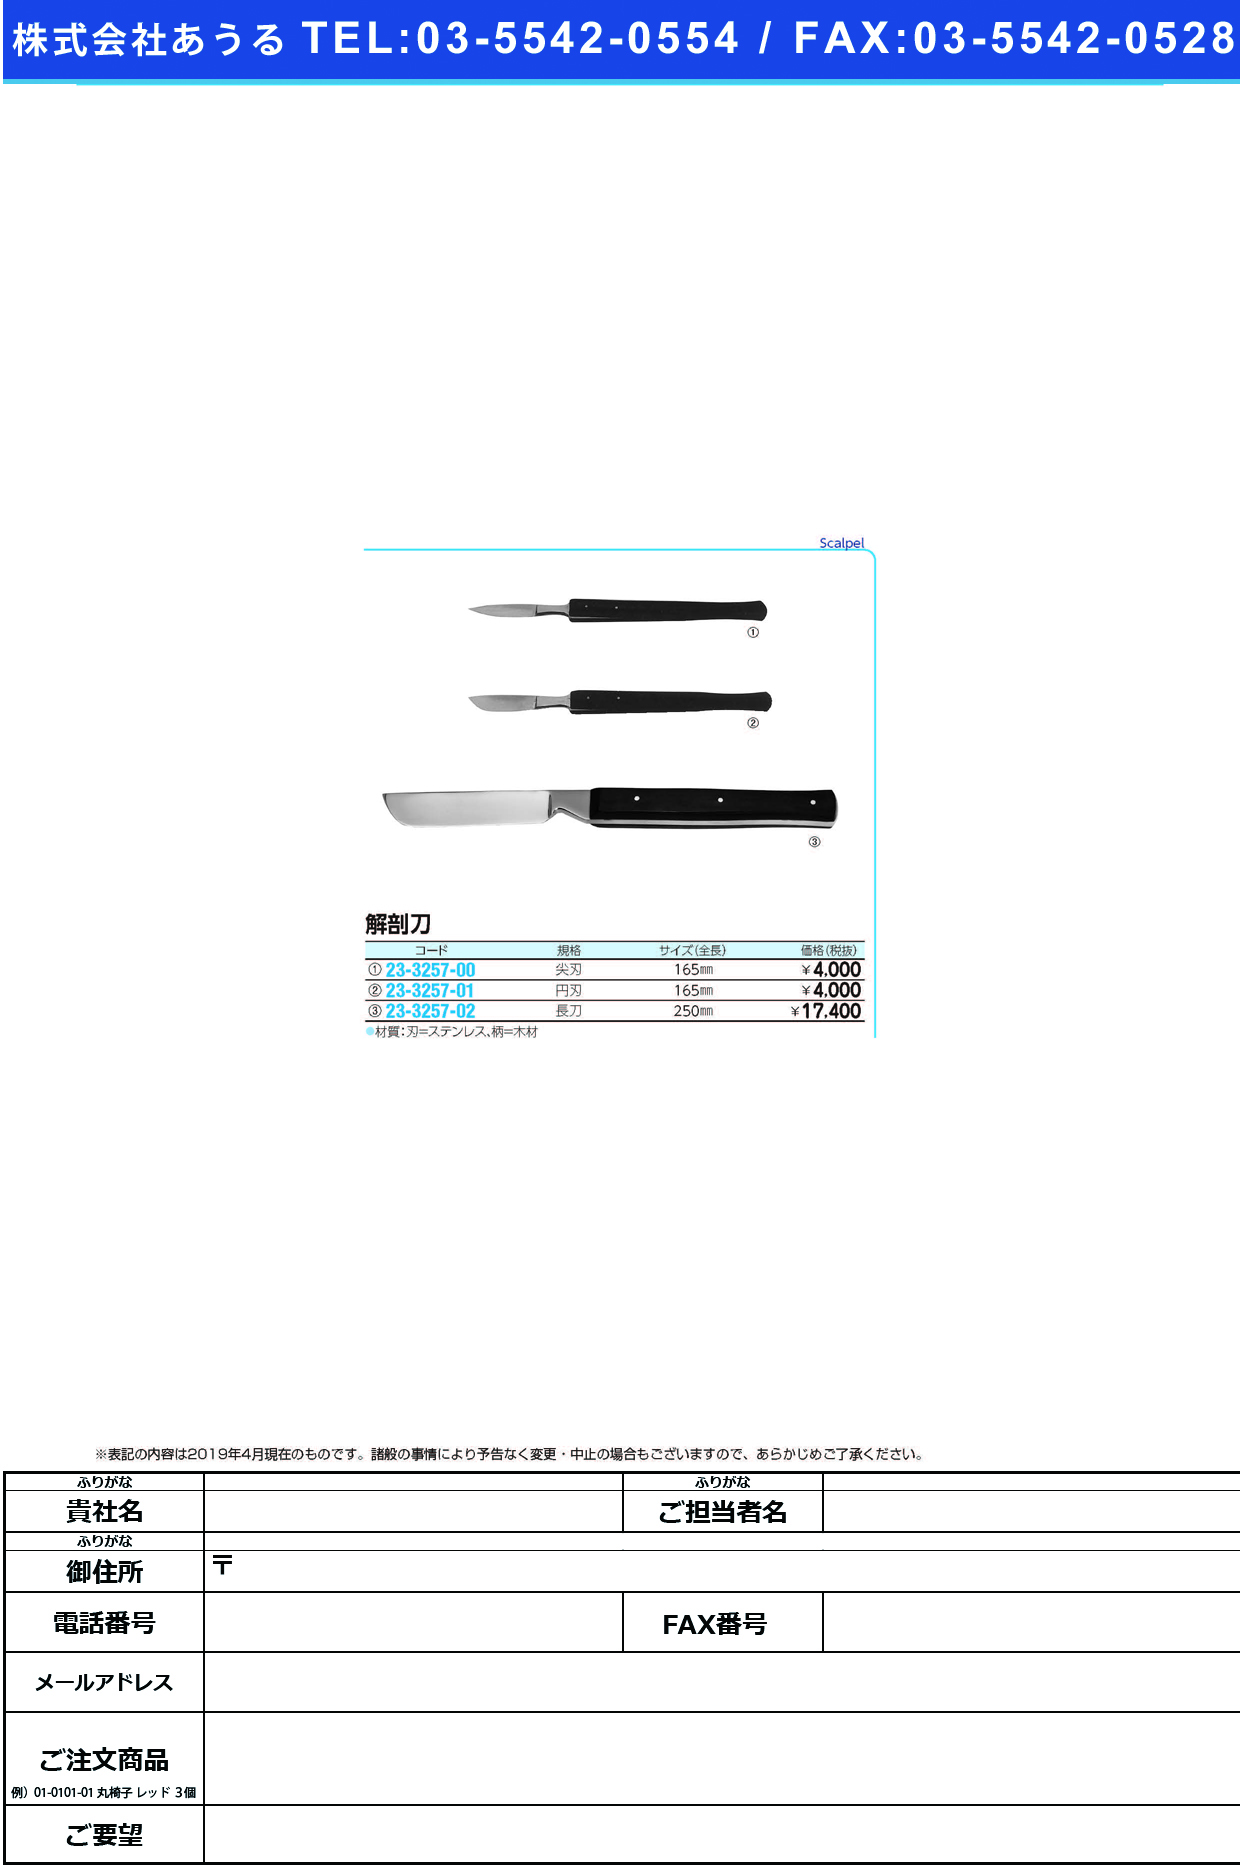 (23-3257-00)解剖尖刃刀 TKZ-V8110-1 ｶｲﾎﾞｳｾﾝｼﾞﾝﾄｳ【1本単位】【2019年カタログ商品】